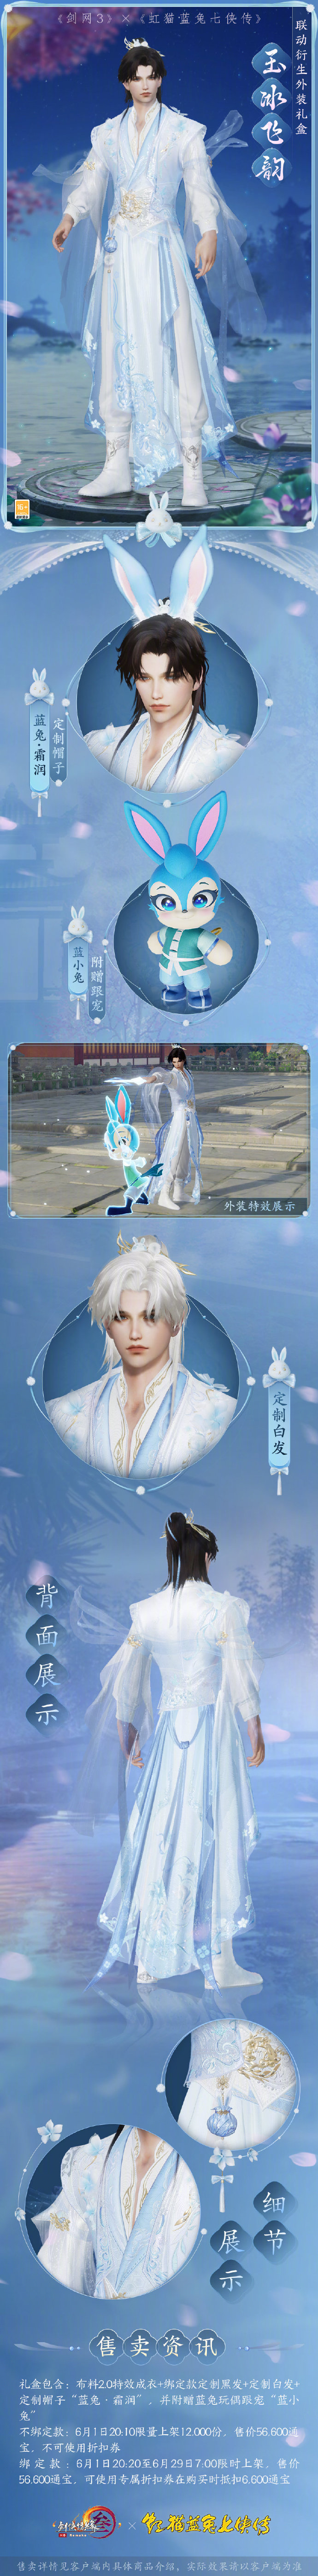 《剑网3》x《虹猫蓝兔七侠传》衍生外装正式亮相